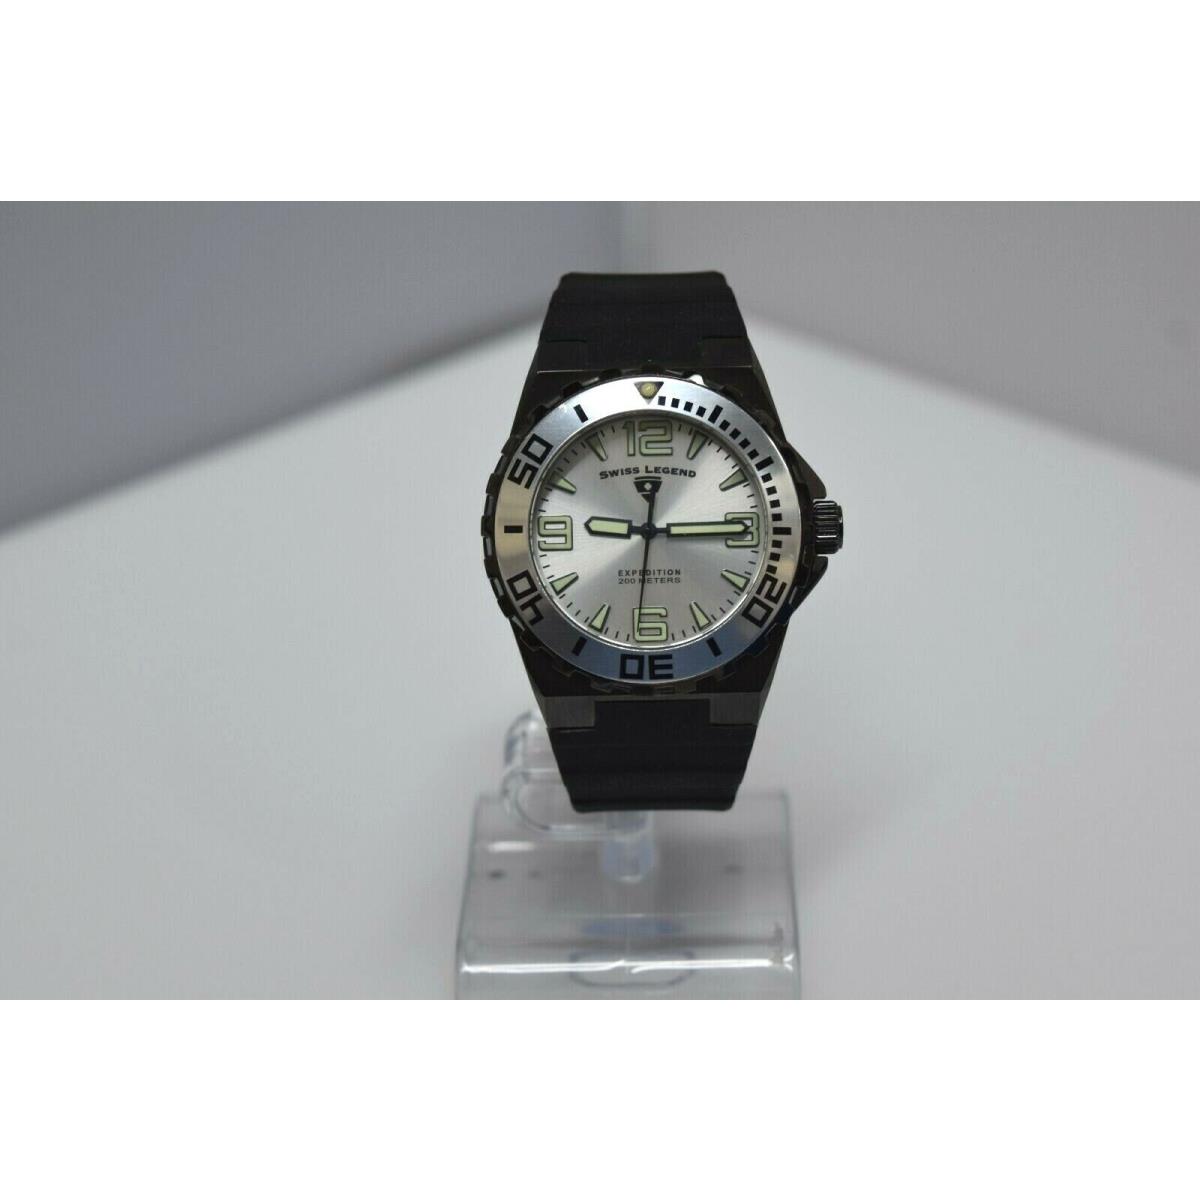 Swiss Legend Expedition Sapphitek 48mm 200M SL-10008 Watch Black/Black/Silver